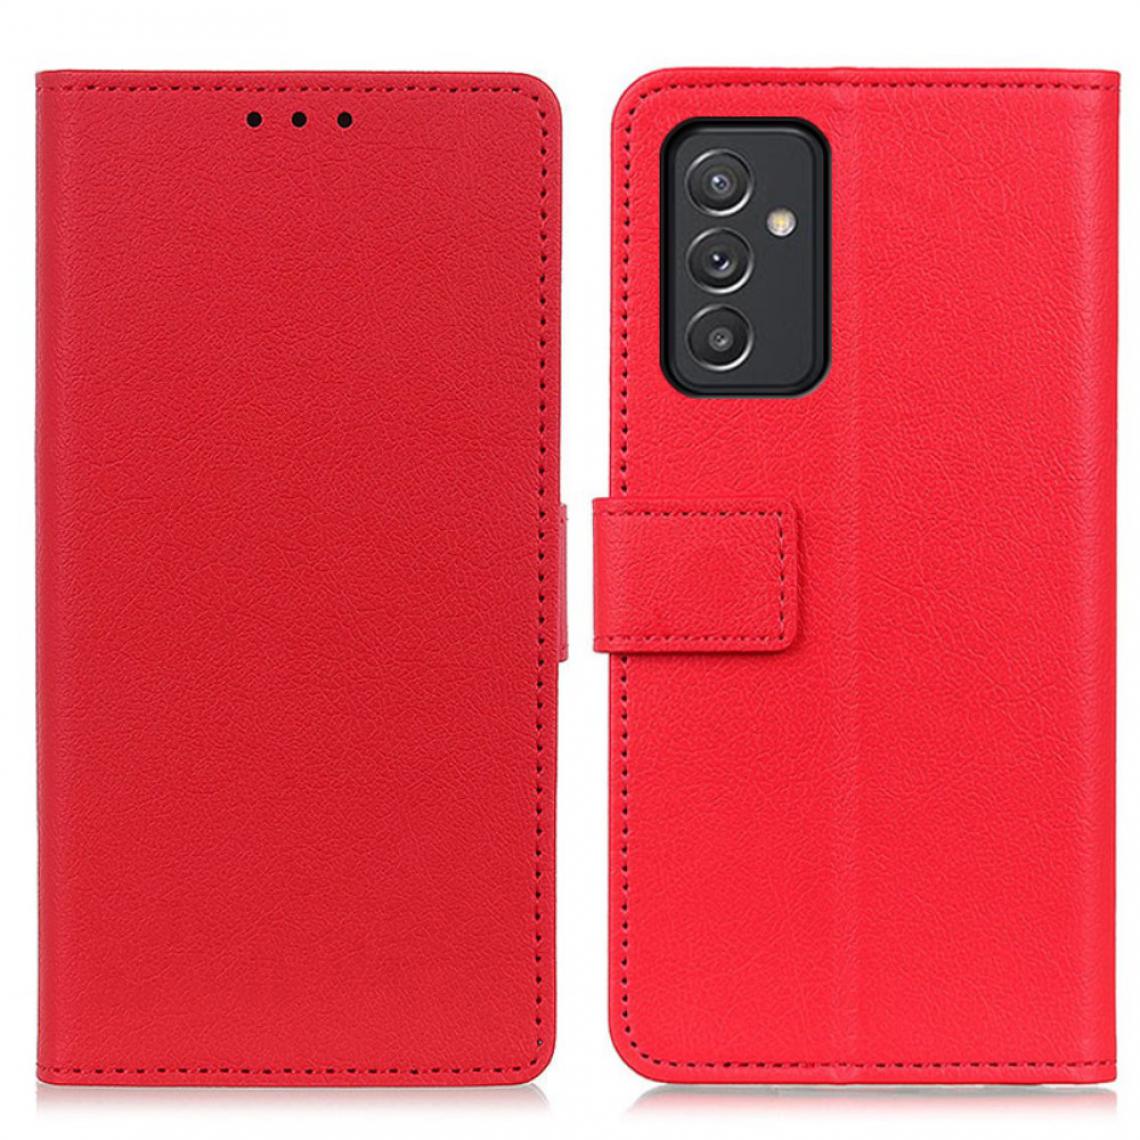 Other - Etui en PU avec support couleur rouge pour Samsung Galaxy A82 5G - Coque, étui smartphone